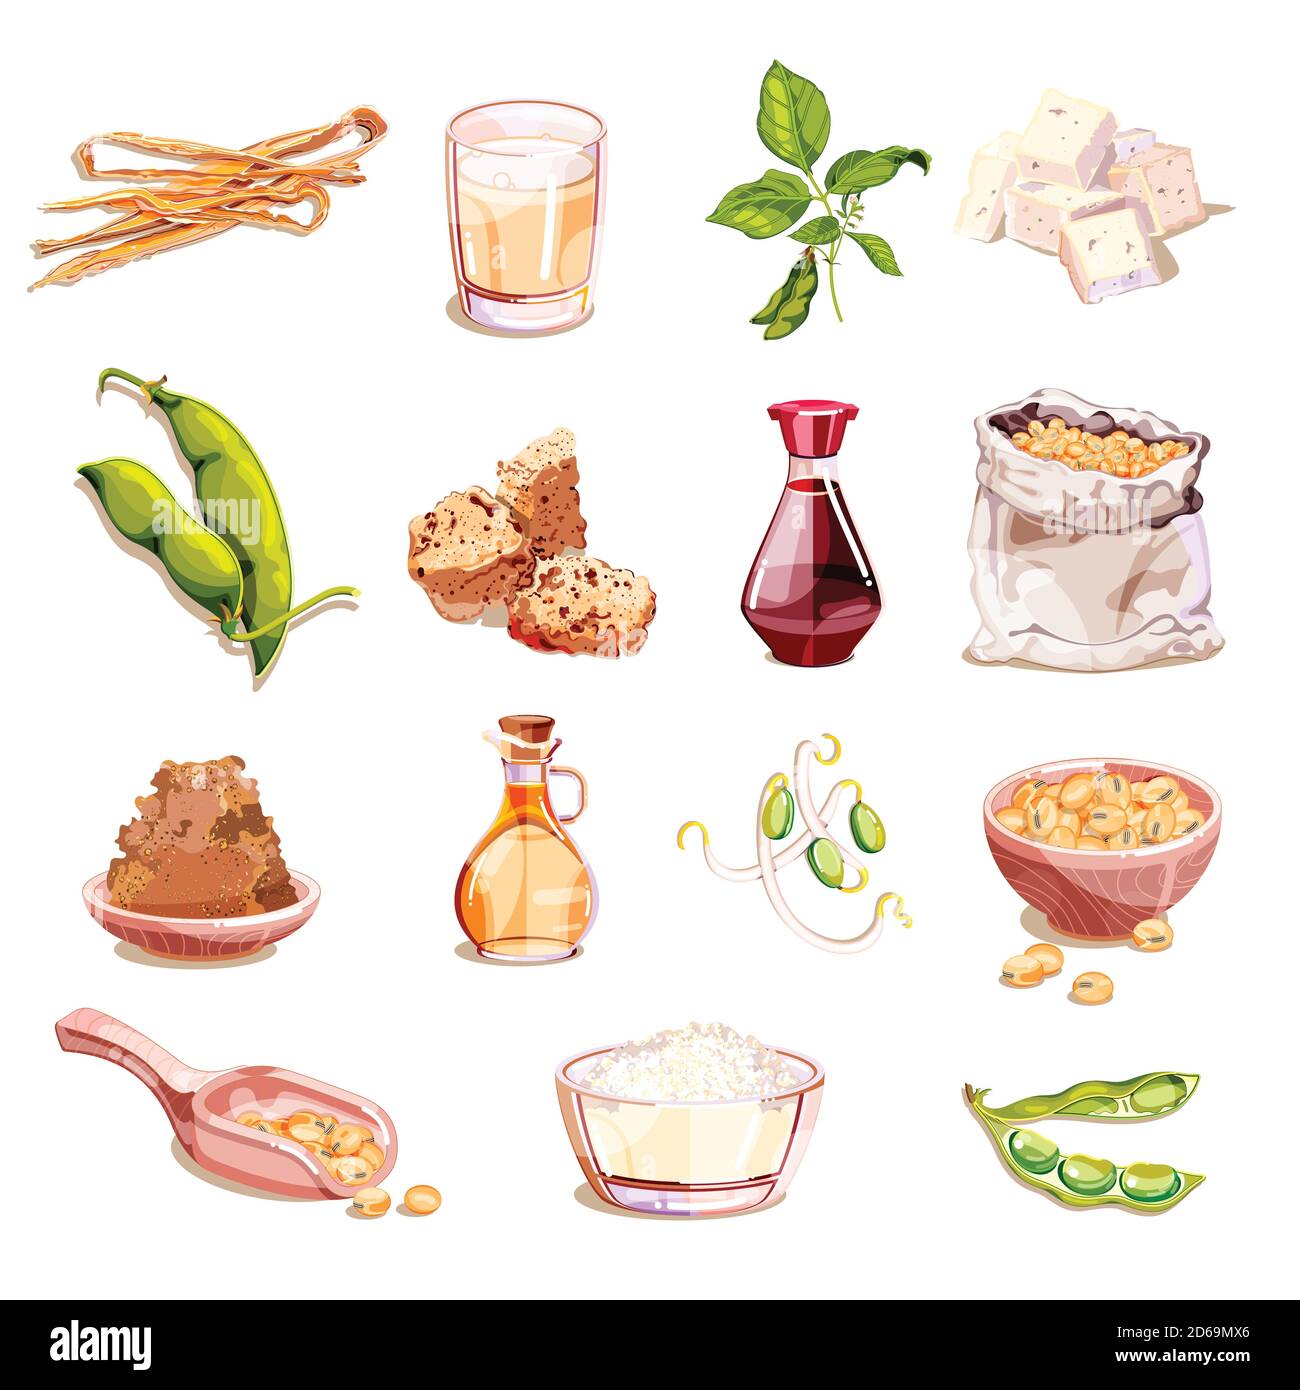 Sojabohnen und Soja Lebensmittel Vektor Cartoon Illustration. Vegetarische Produkte Icons und Design-Elemente. Sojamilch, Tofu, Sprossen, Fleisch, isoliert auf weißem Rücken Stock Vektor